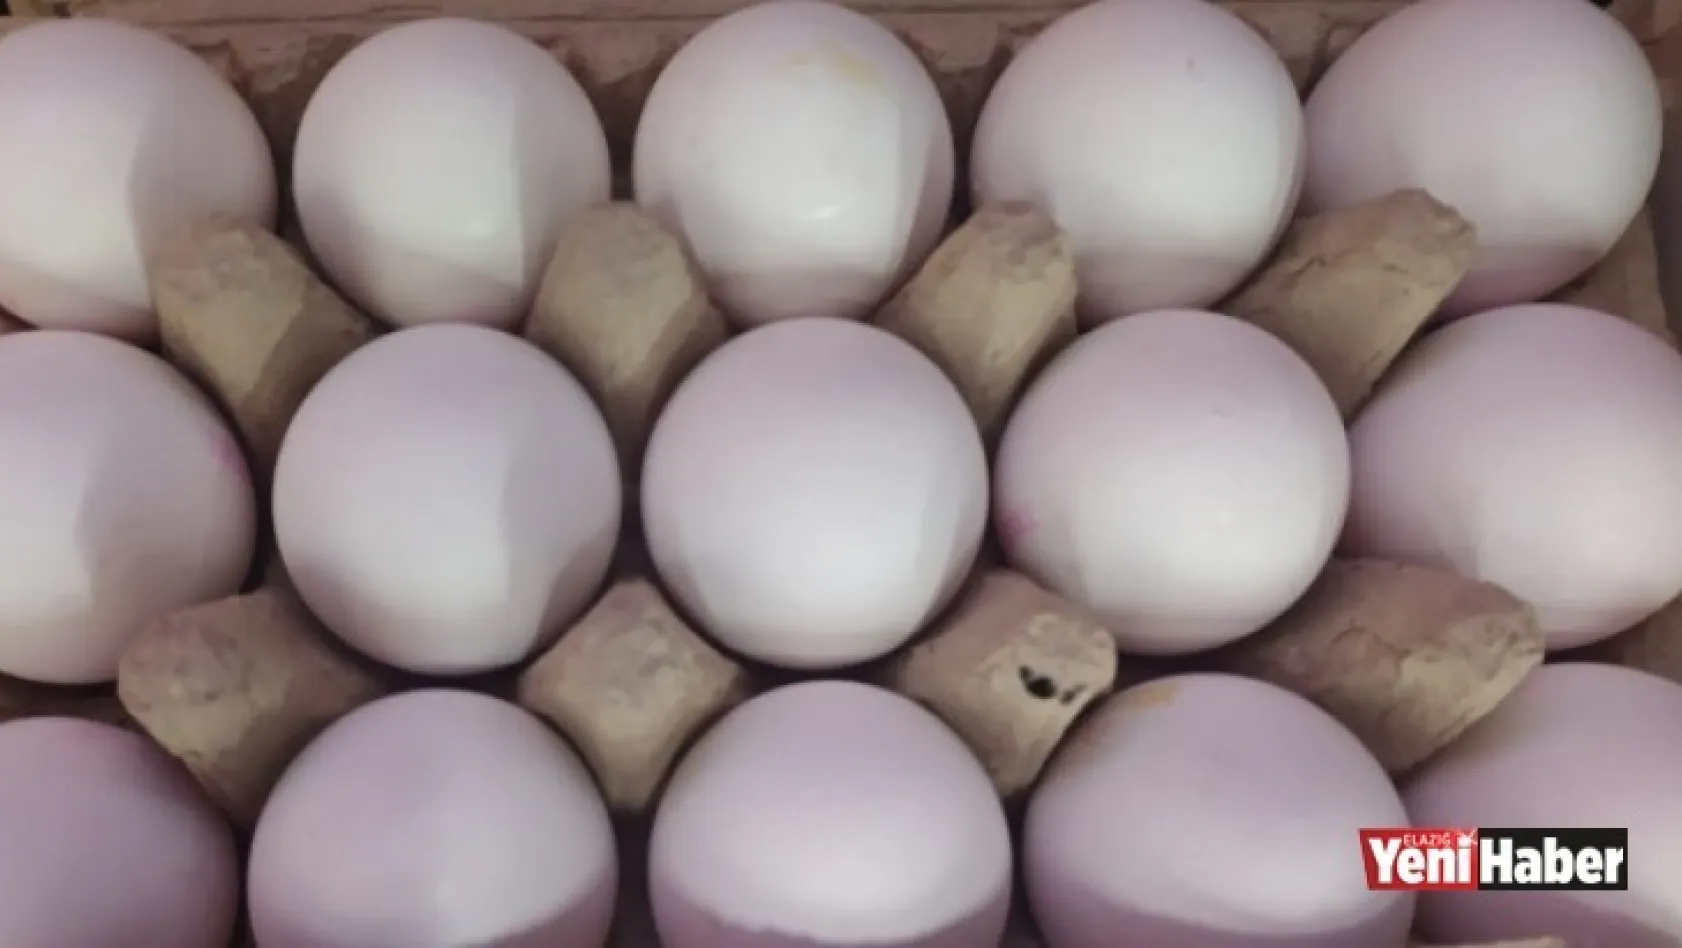 Yumurta Fiyatlarında Rekor Artış!